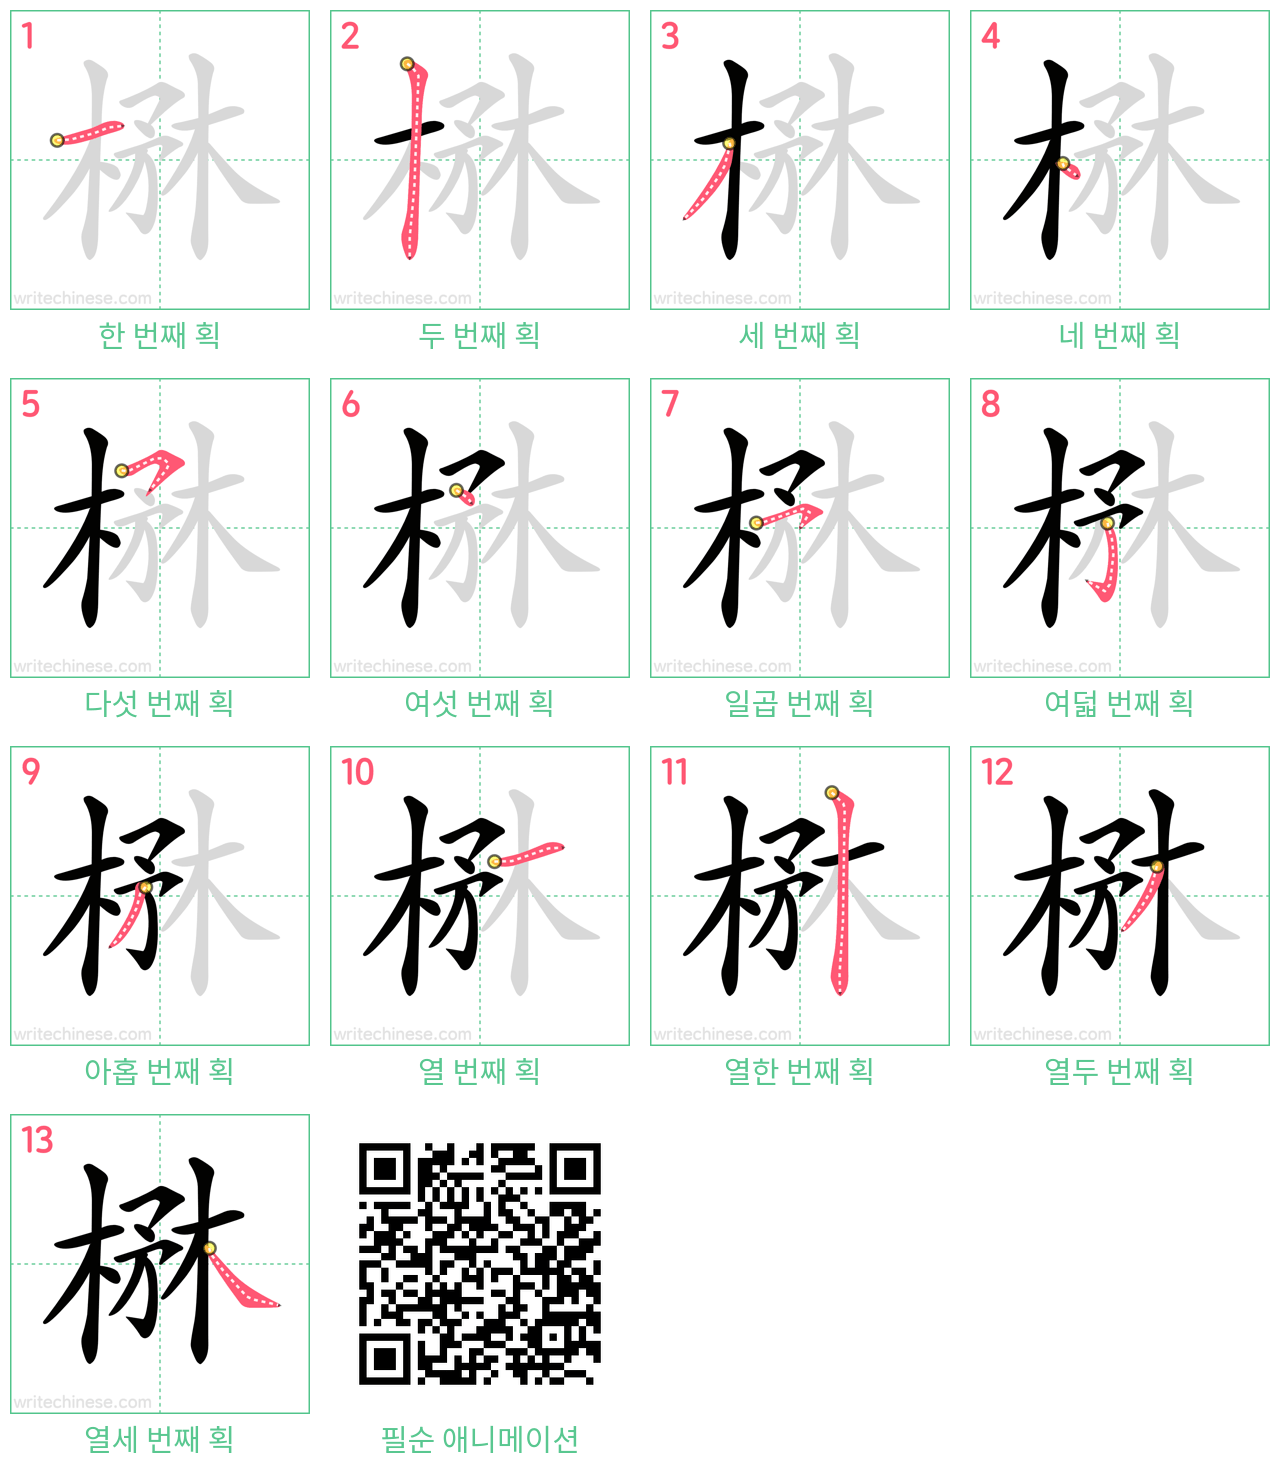 楙 step-by-step stroke order diagrams